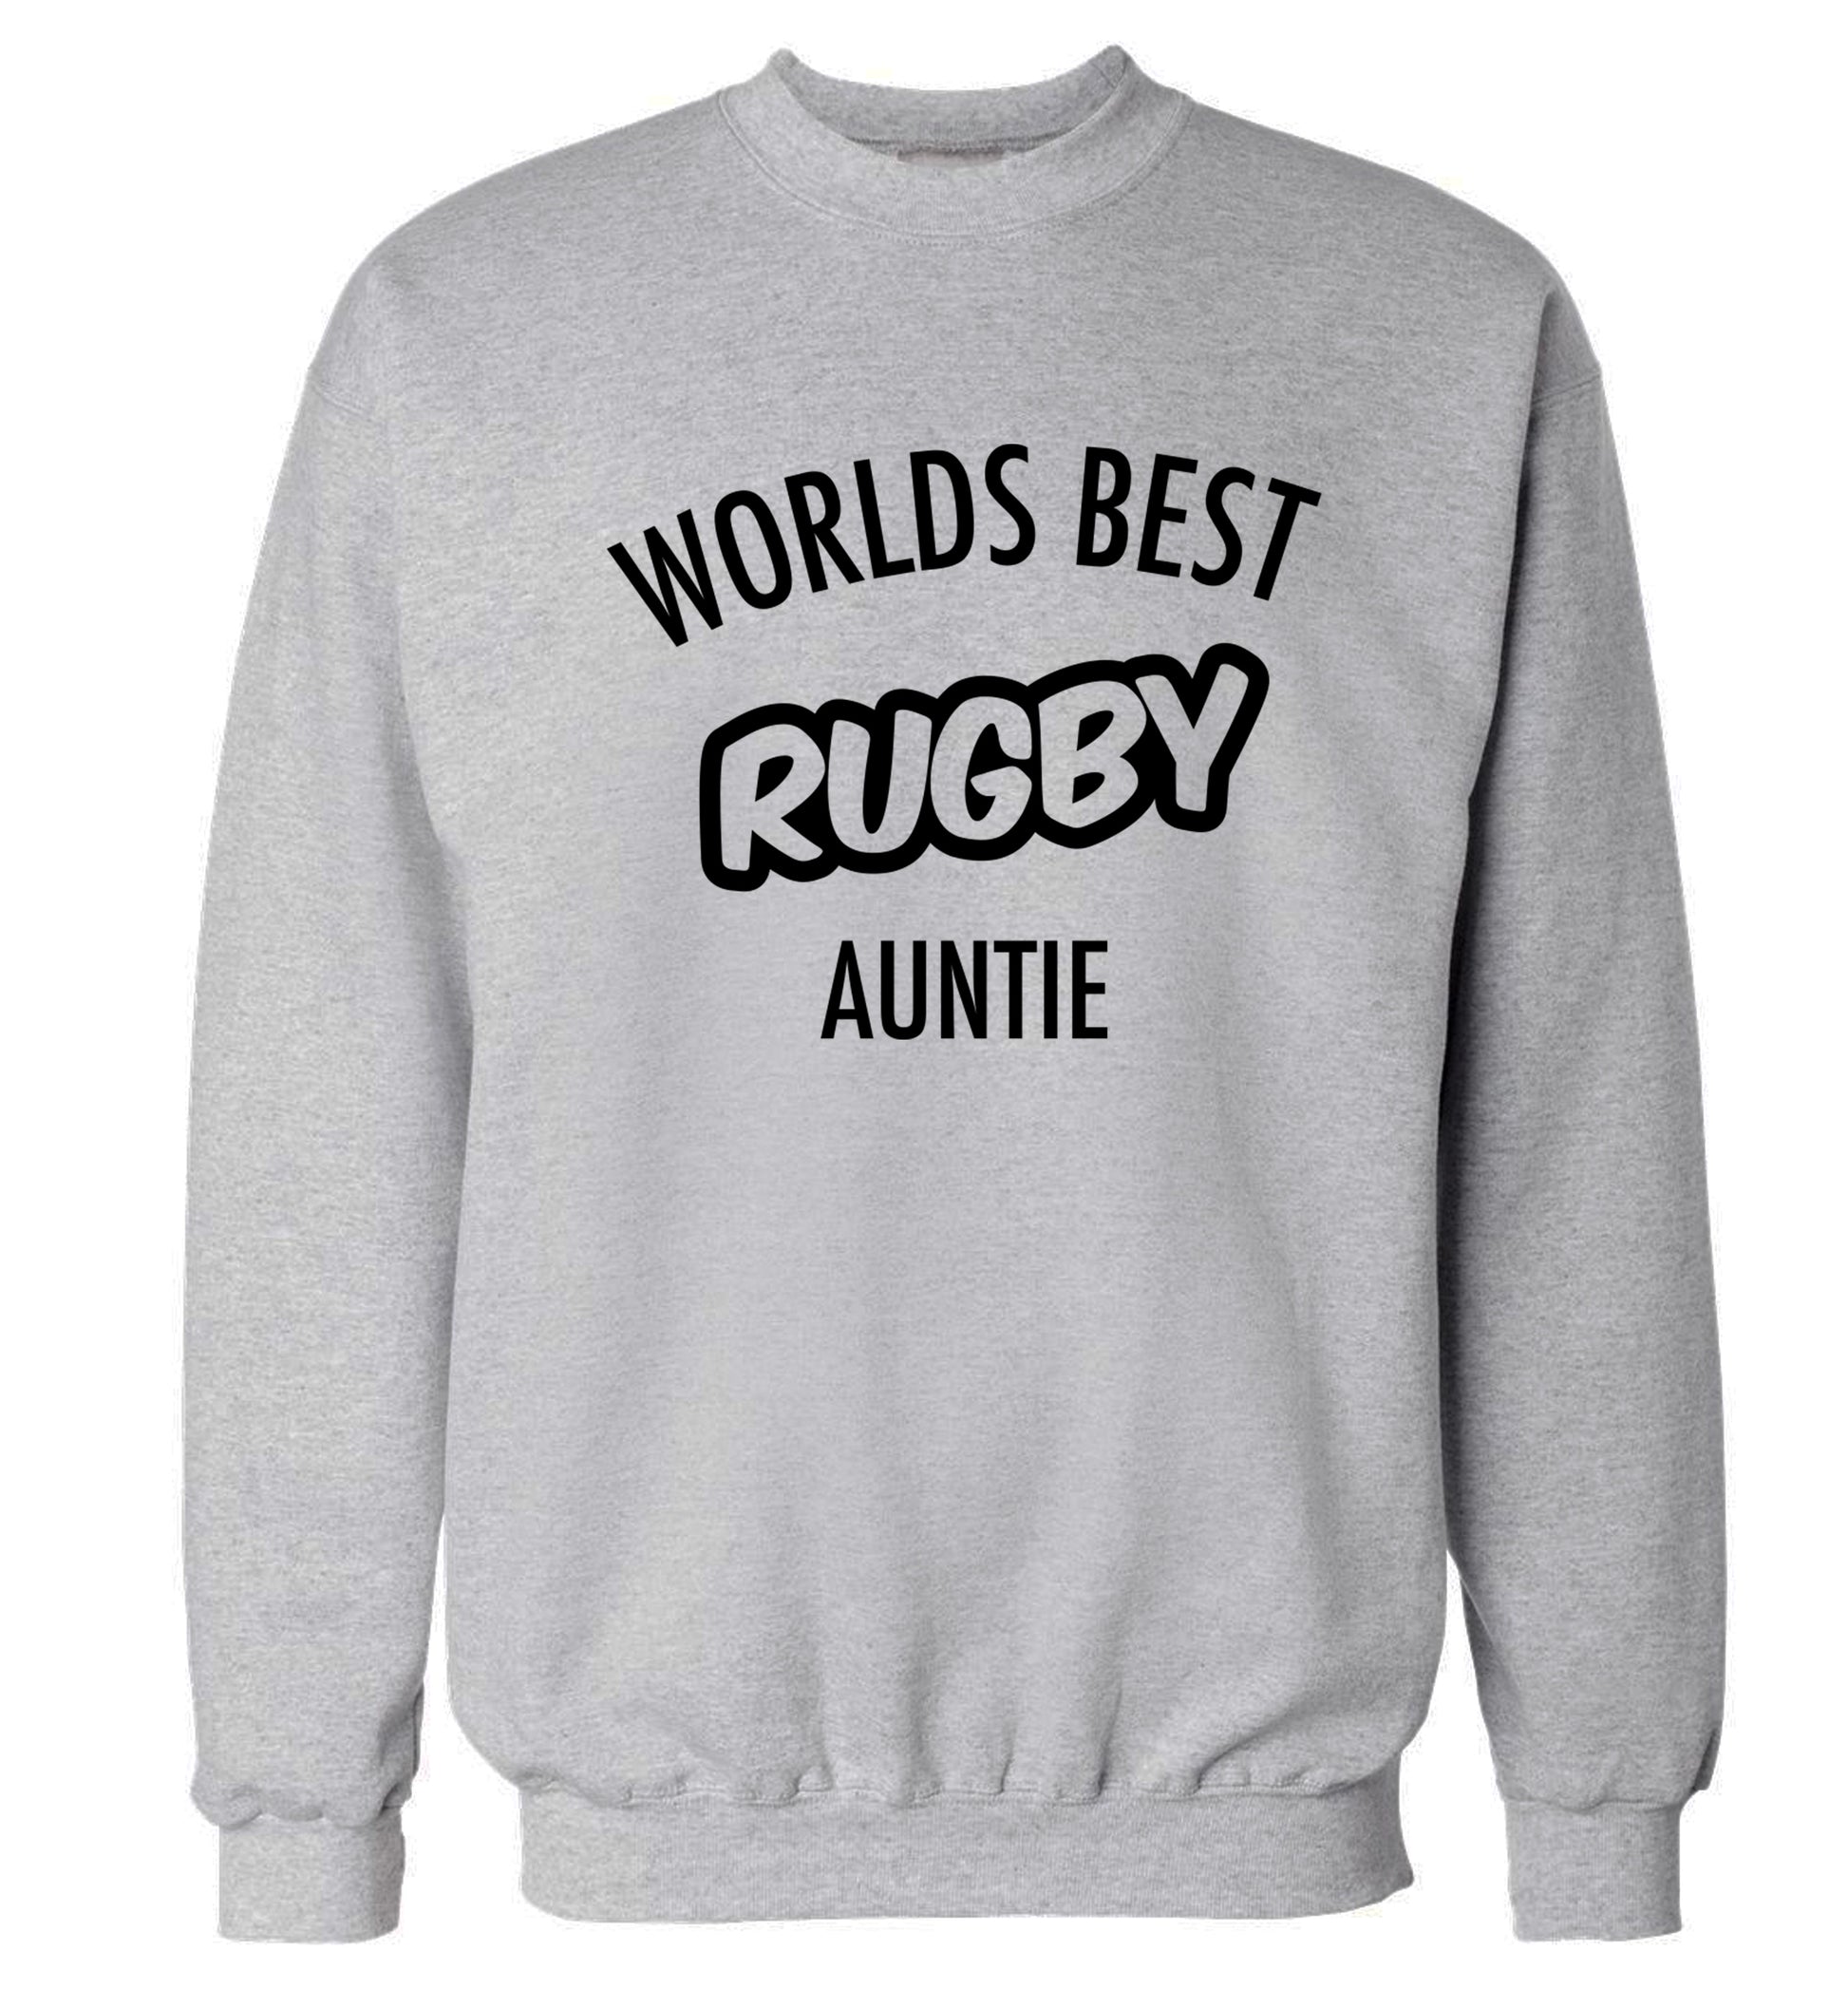 Worlds best rugby auntie Adult's unisex grey Sweater 2XL